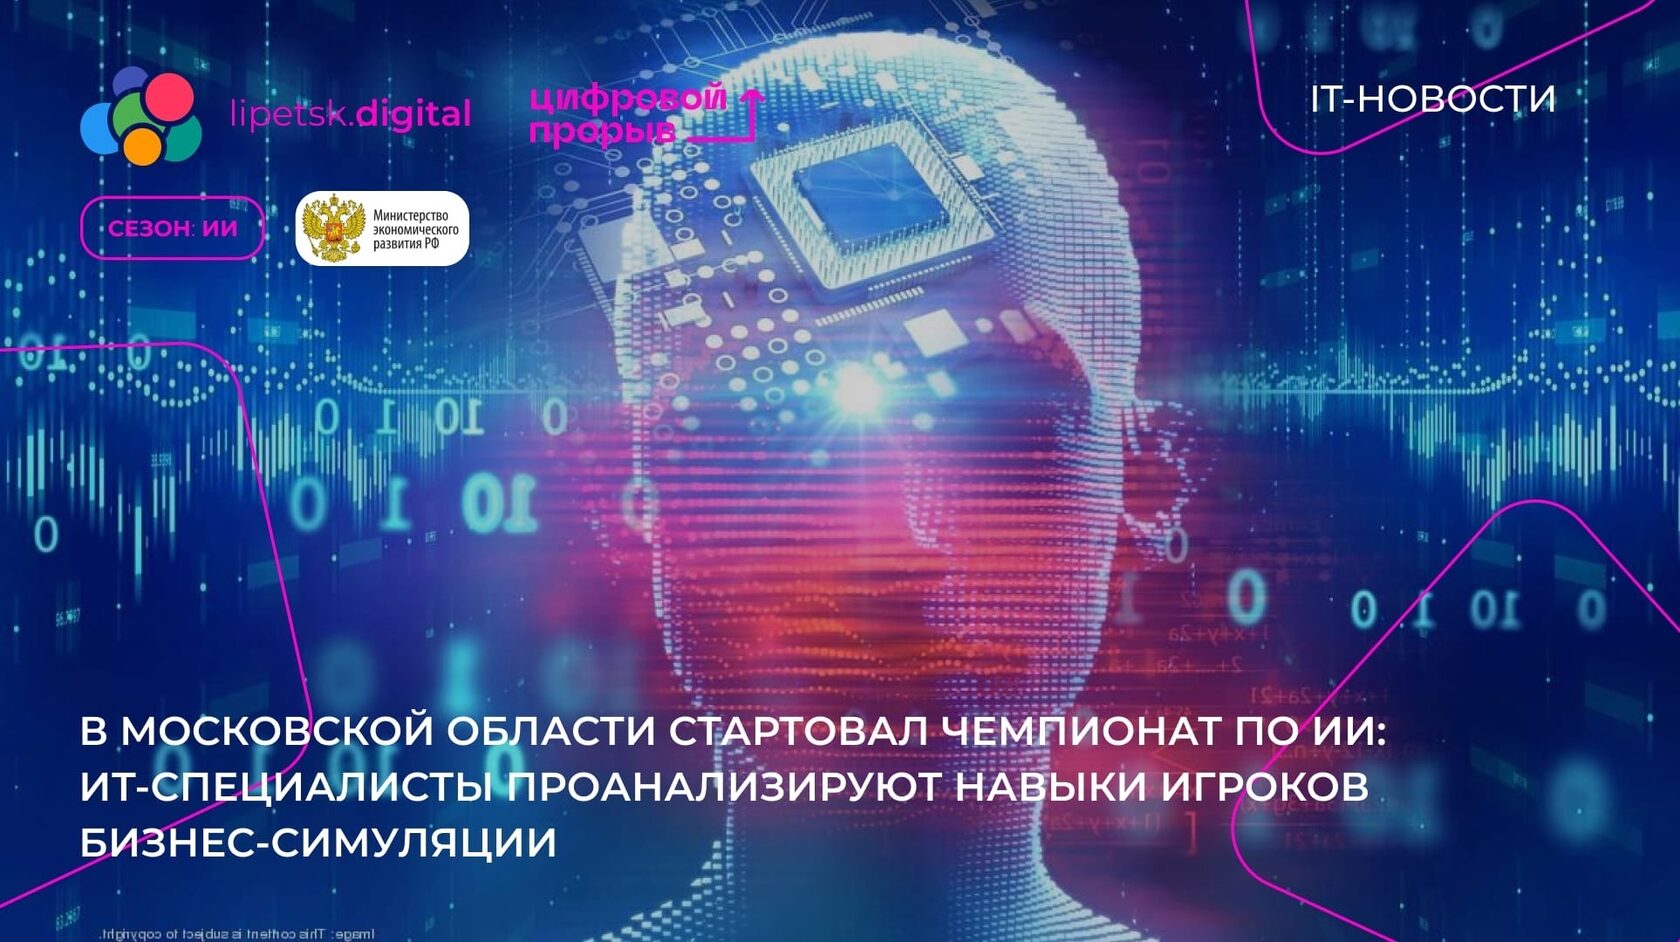 Прорывы искусственного интеллекта. Информационные технологии. Цифровой бизнес. Искусственный интеллект. Искусственный интеллект в России.